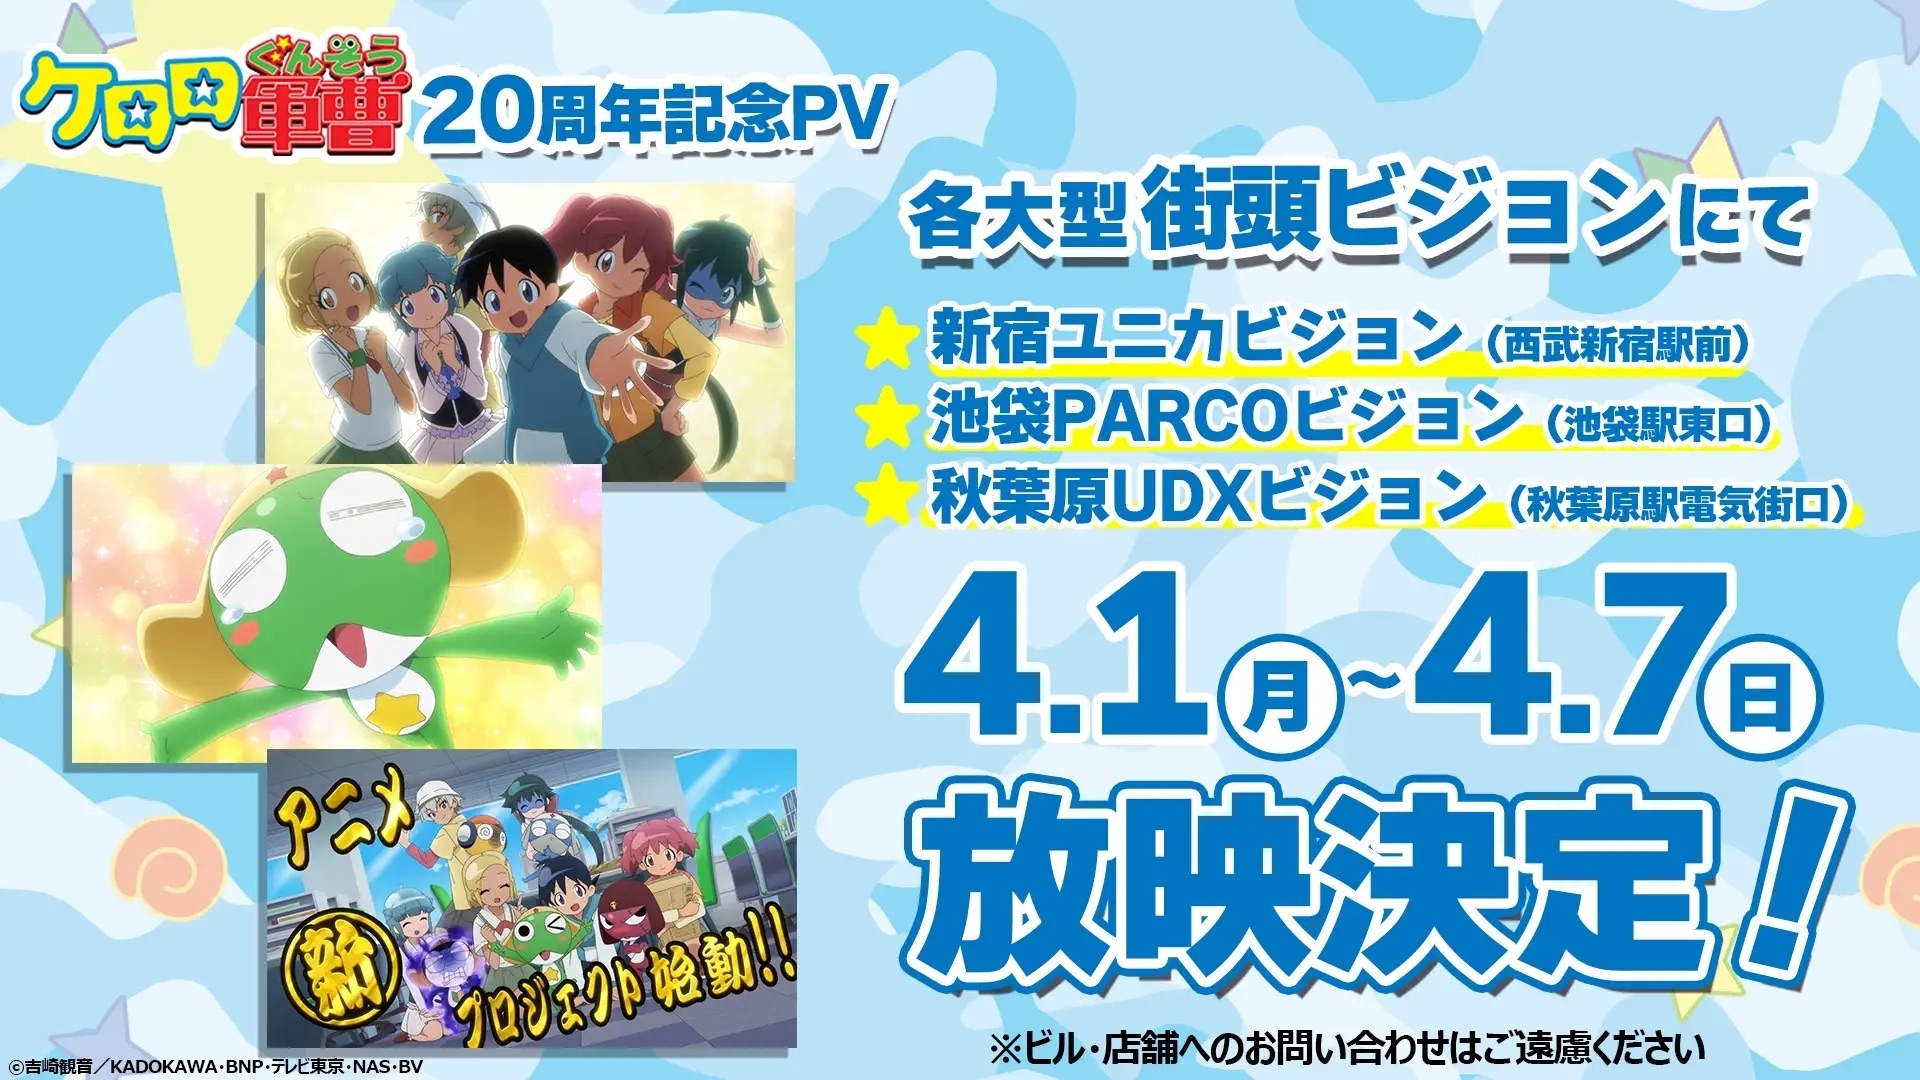 フライヤー:「ポケットモンスター」20年目の記念イベント、アニメキャラクターが登場する画像付き、日付4月1日から7日。